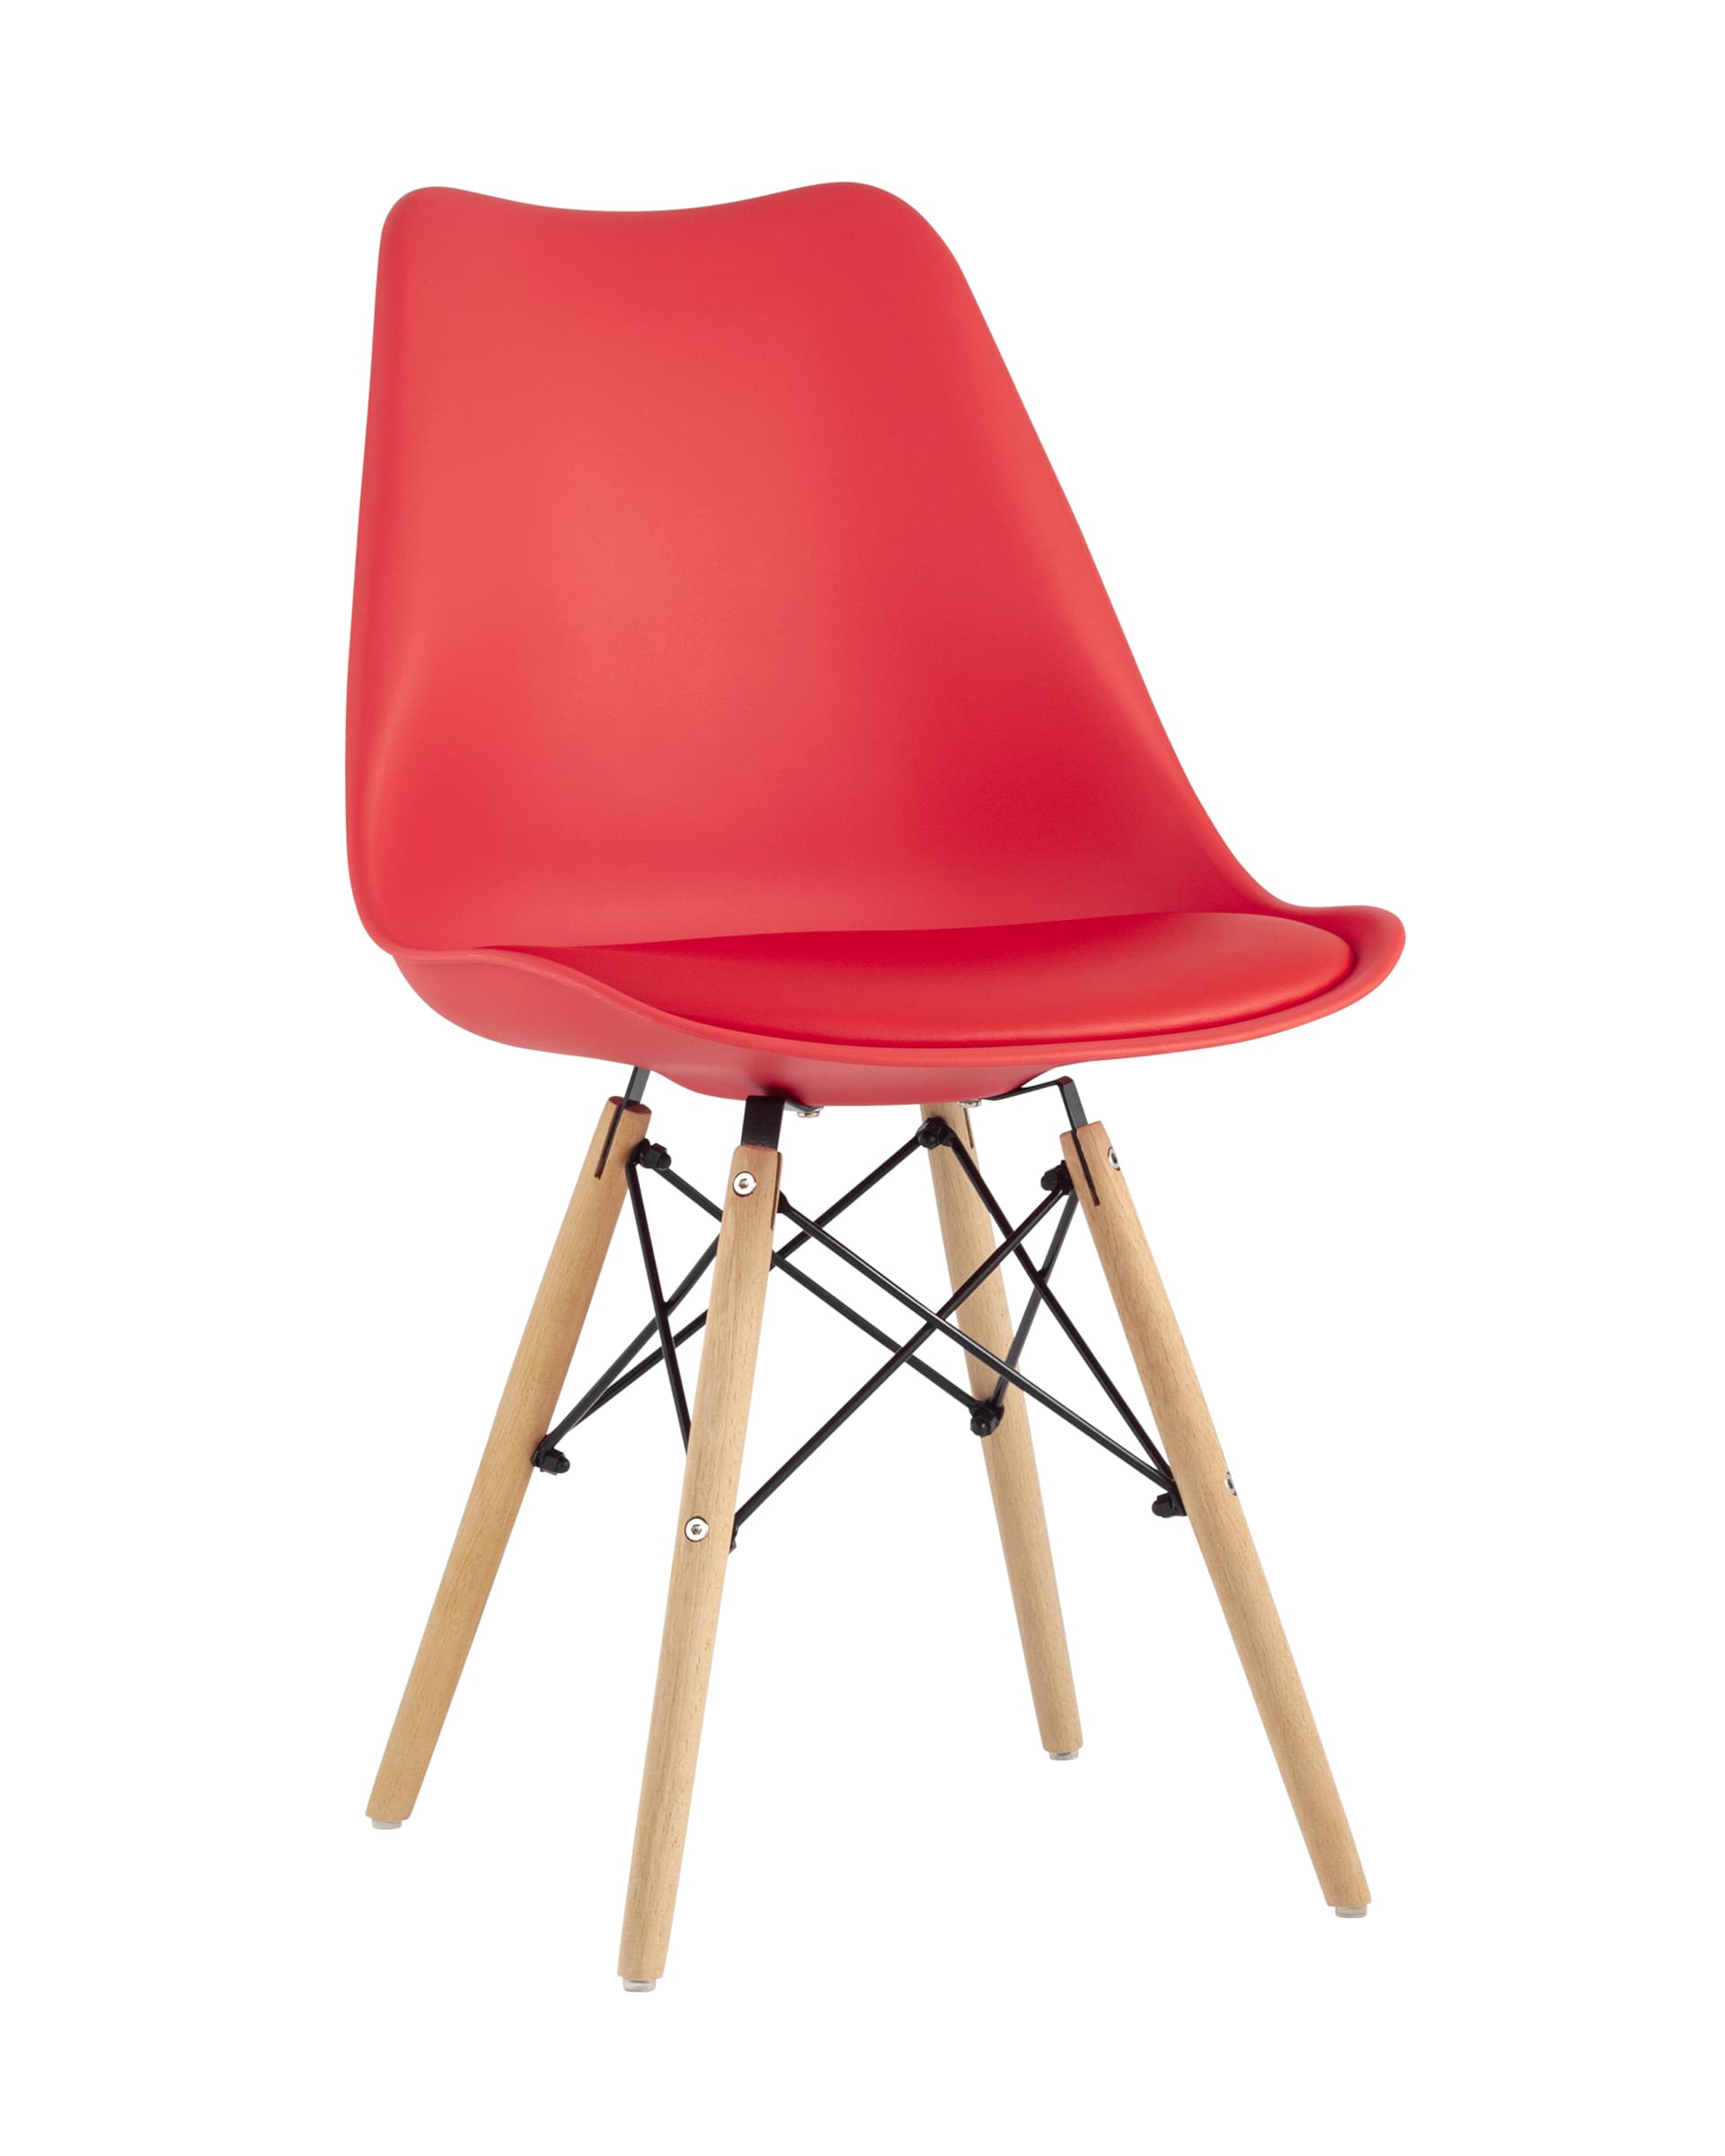 Stool Group Eames Soft красный обеденный сиденье экокожа ножки из массива бука